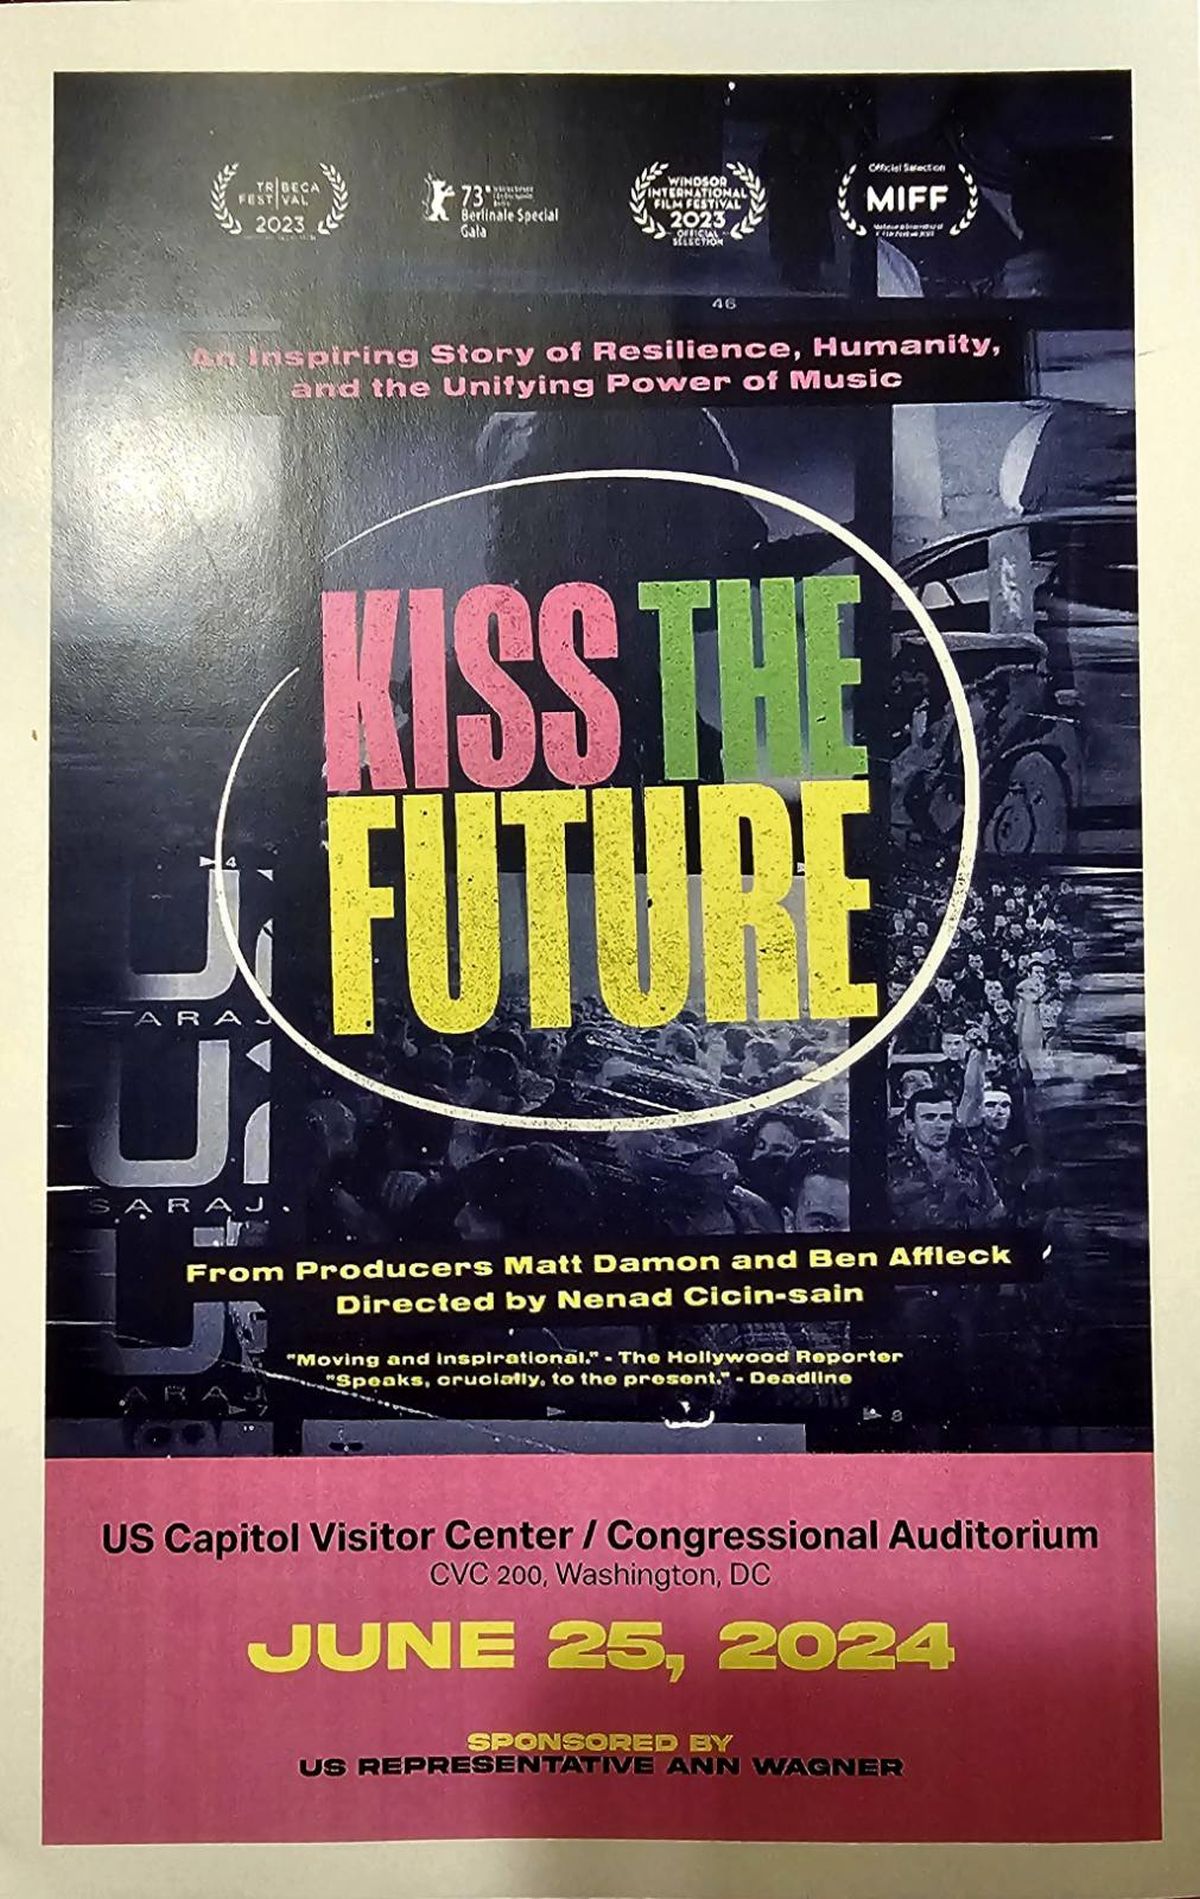 S promocije filma 'Kiss the Future' u Kongresu SAD